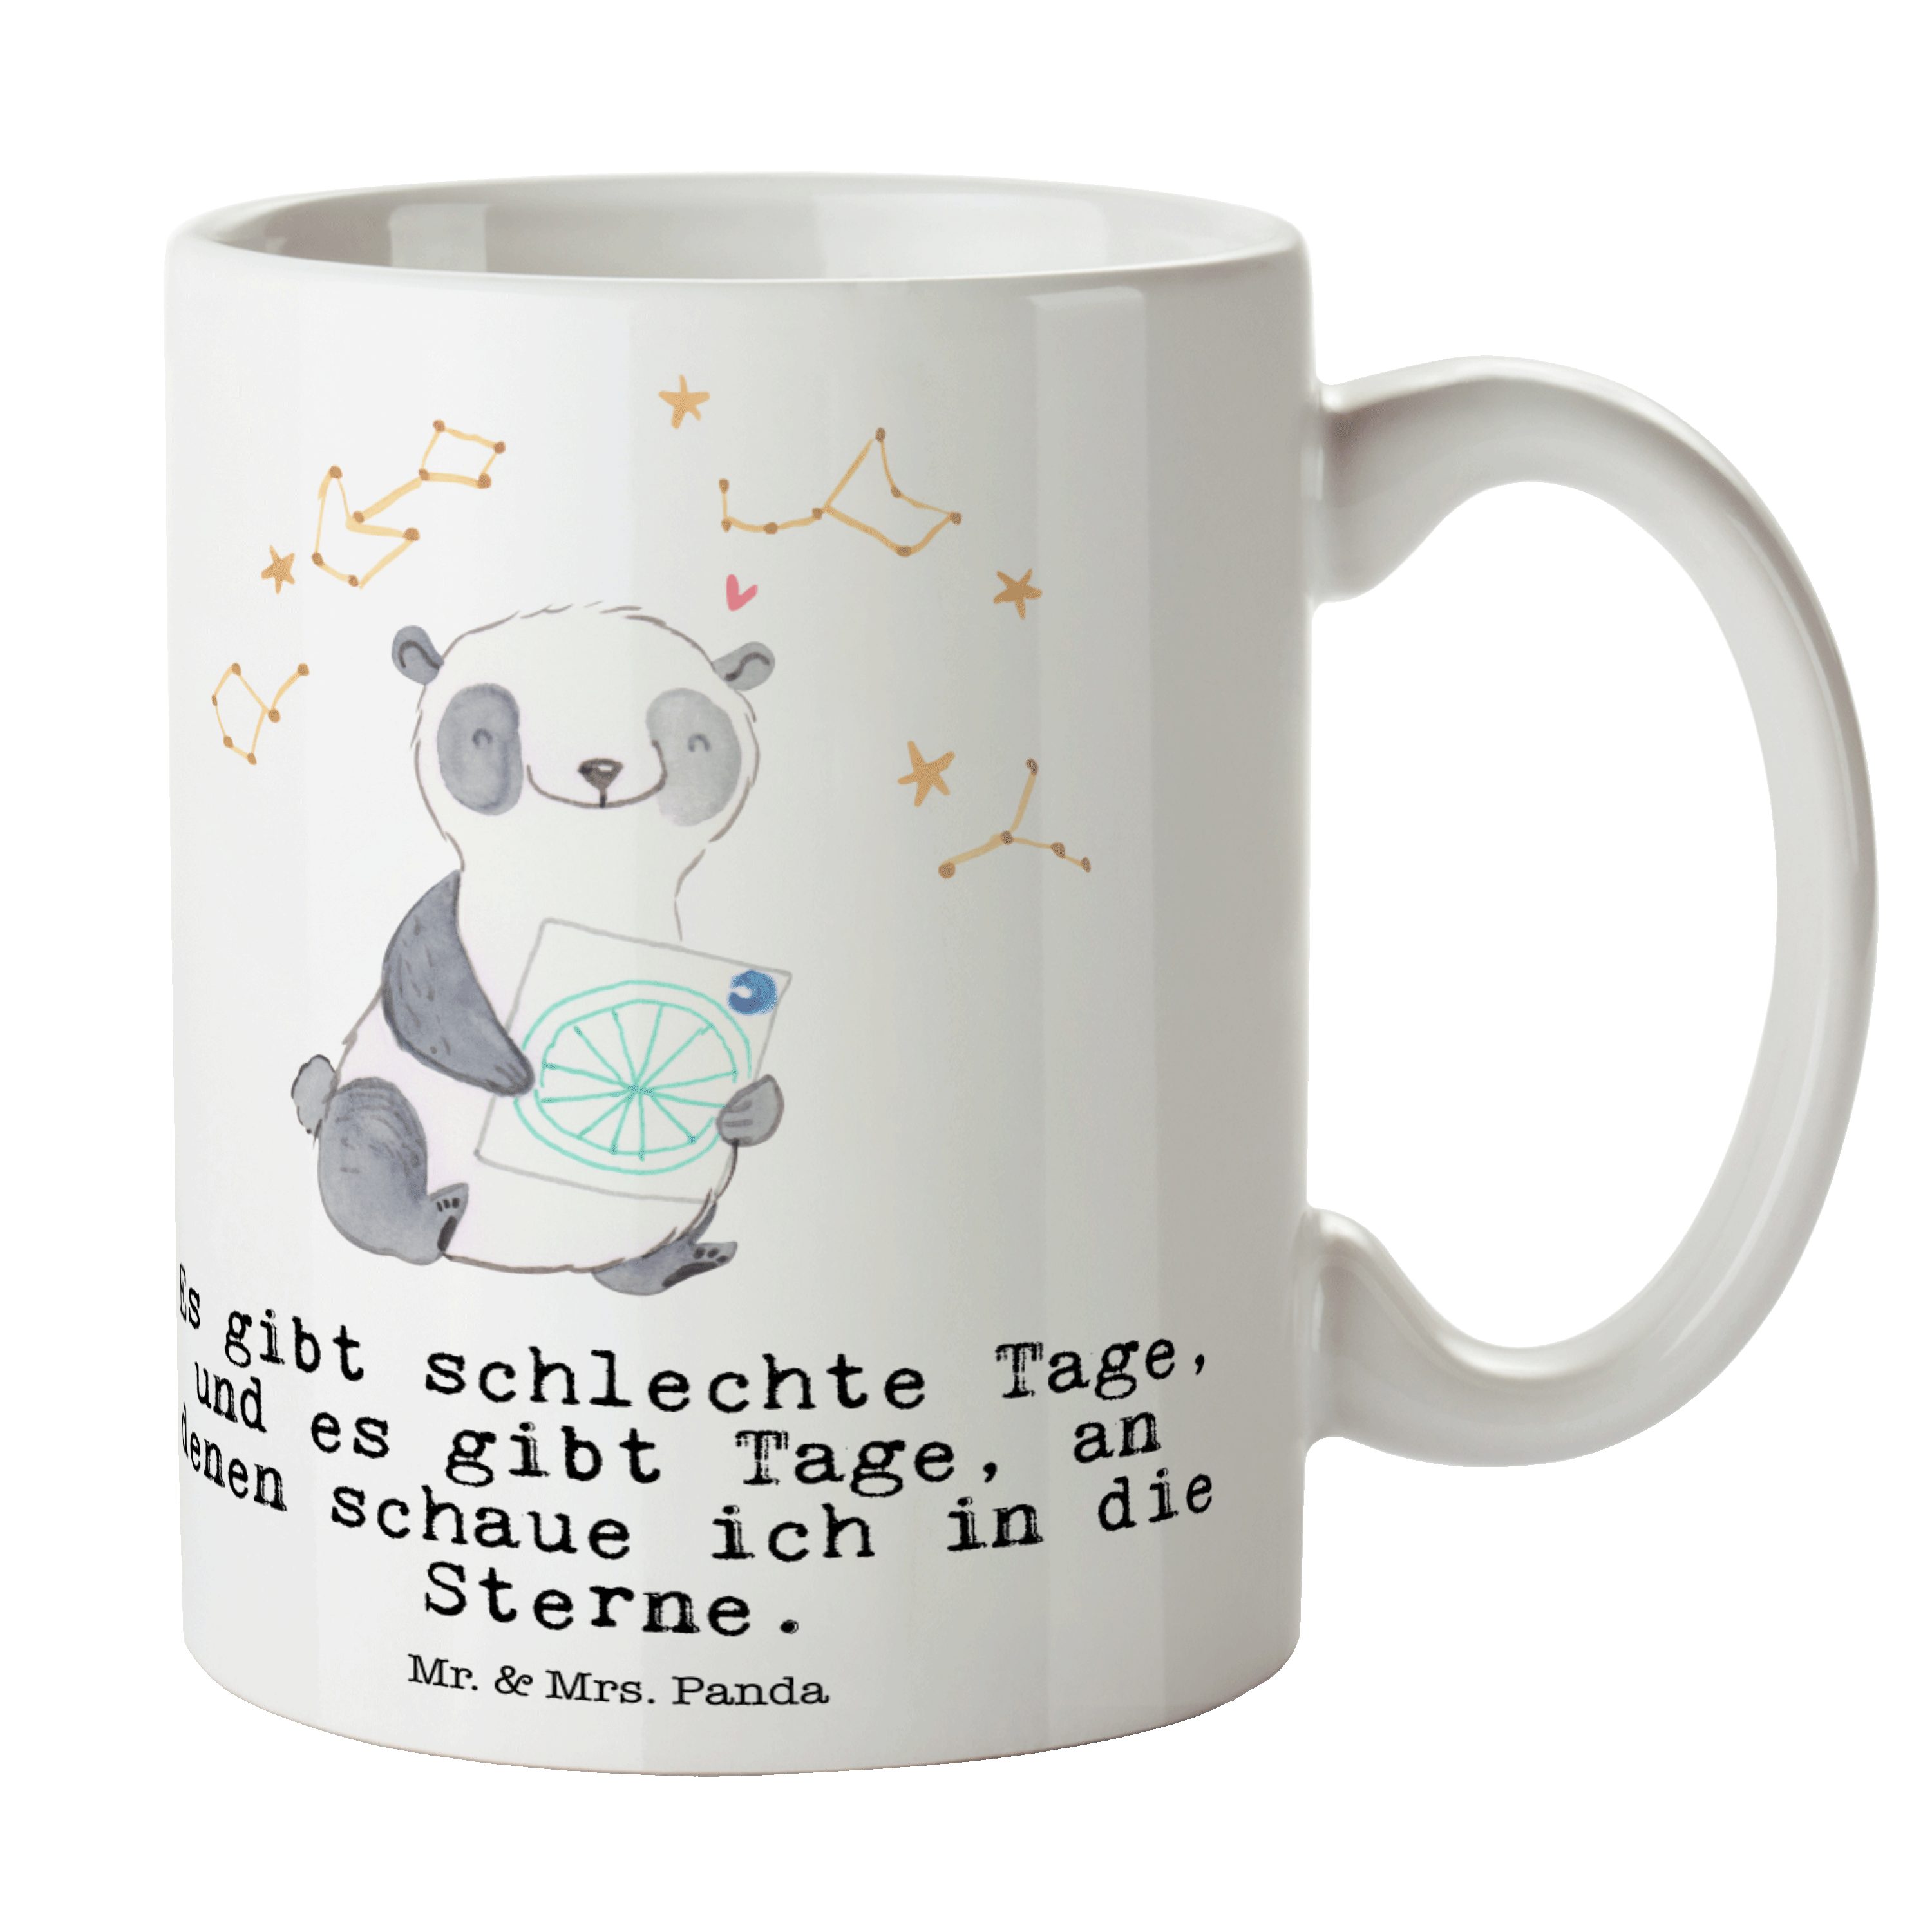 Mr. & Mrs. Panda Tasse Panda Astrologie Tage - Weiß - Geschenk, Geschenk Tasse, Büro Tasse, Keramik